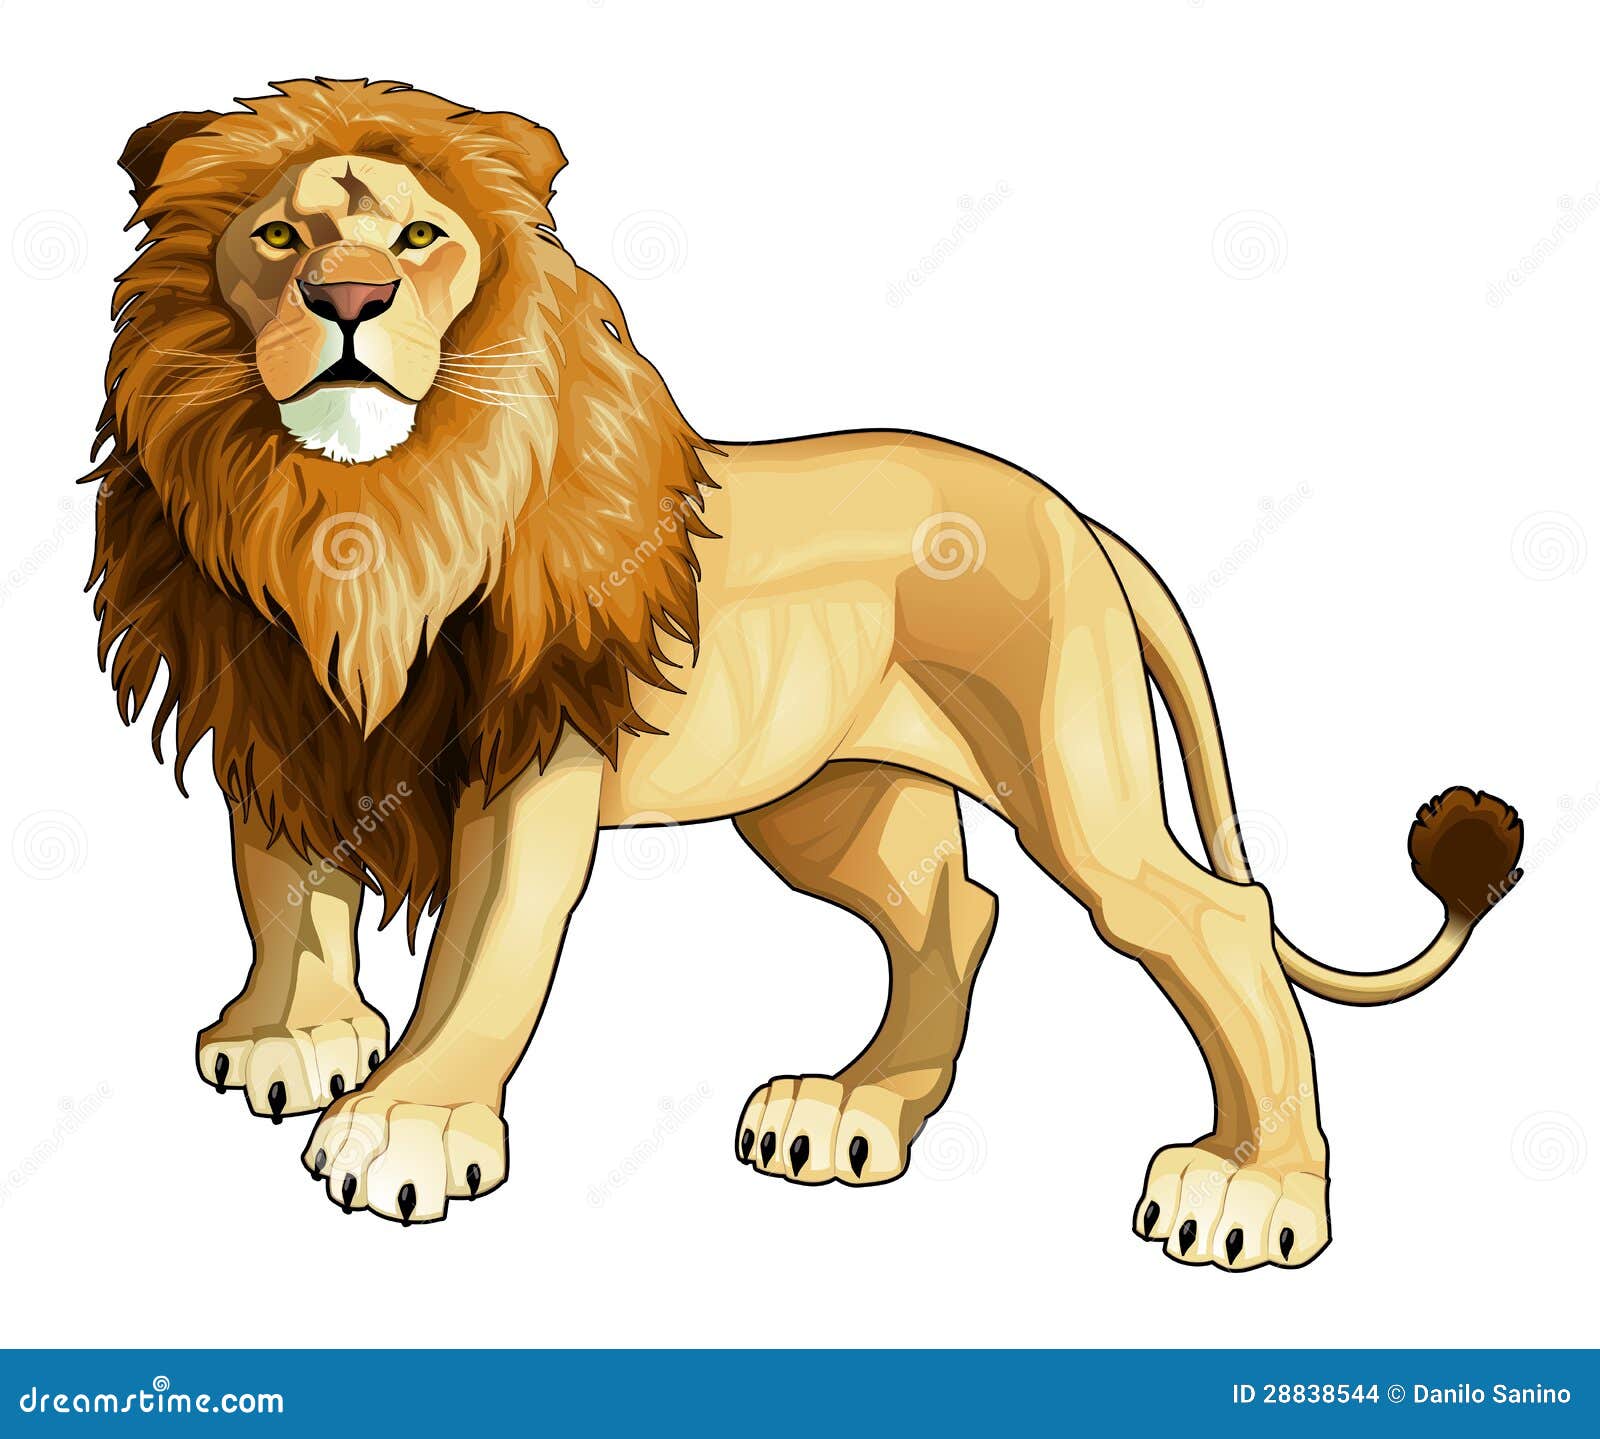 lion image clip art